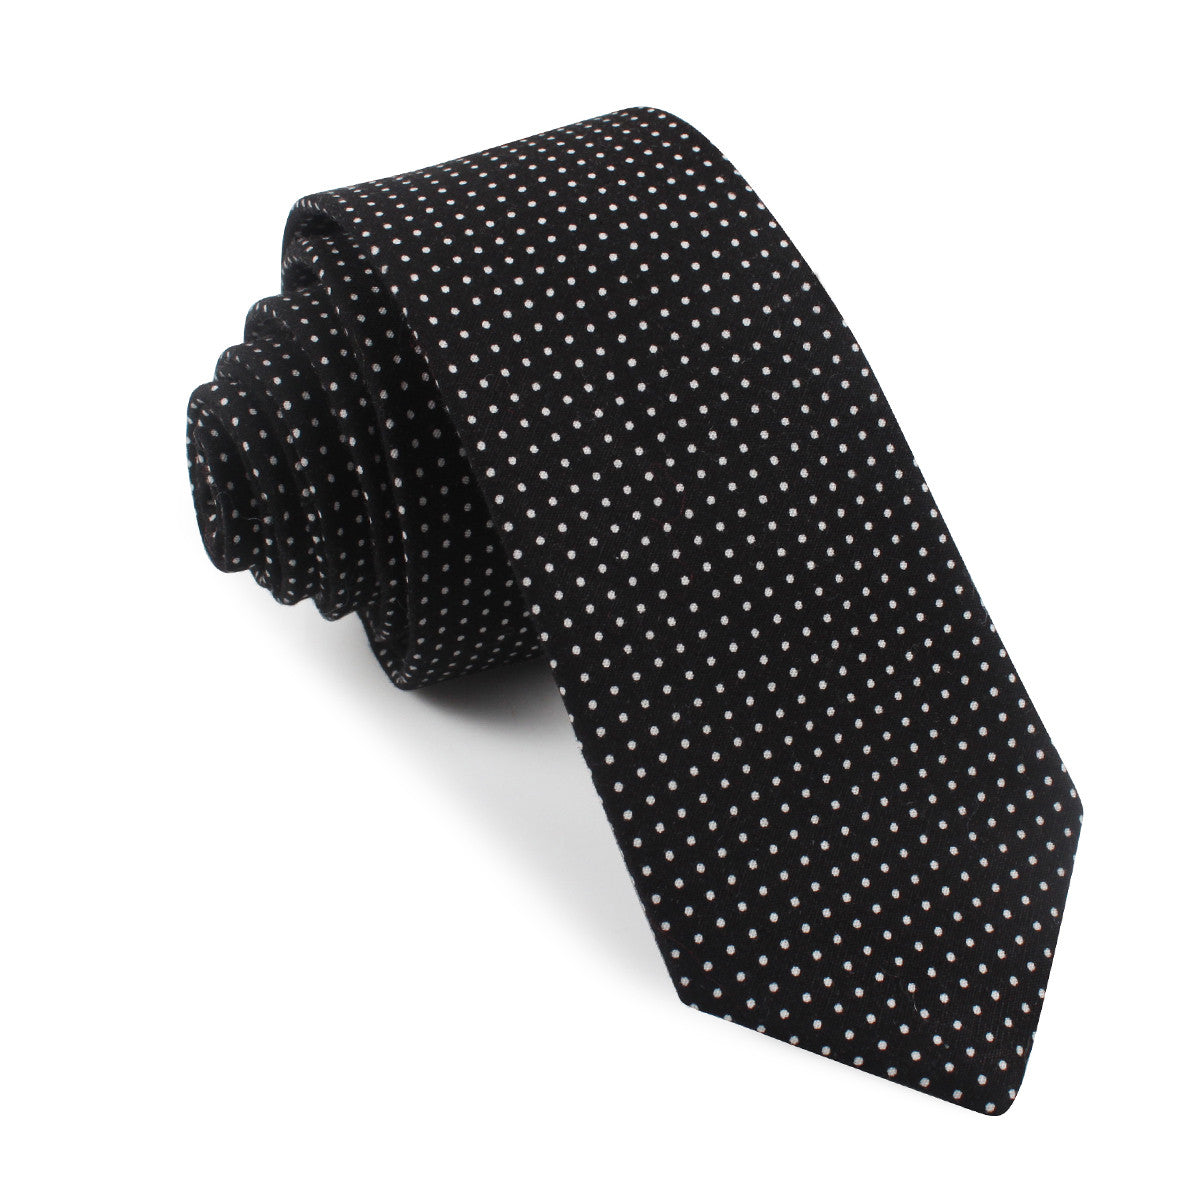 Black Cotton with White Mini Polka Dots Skinny Tie